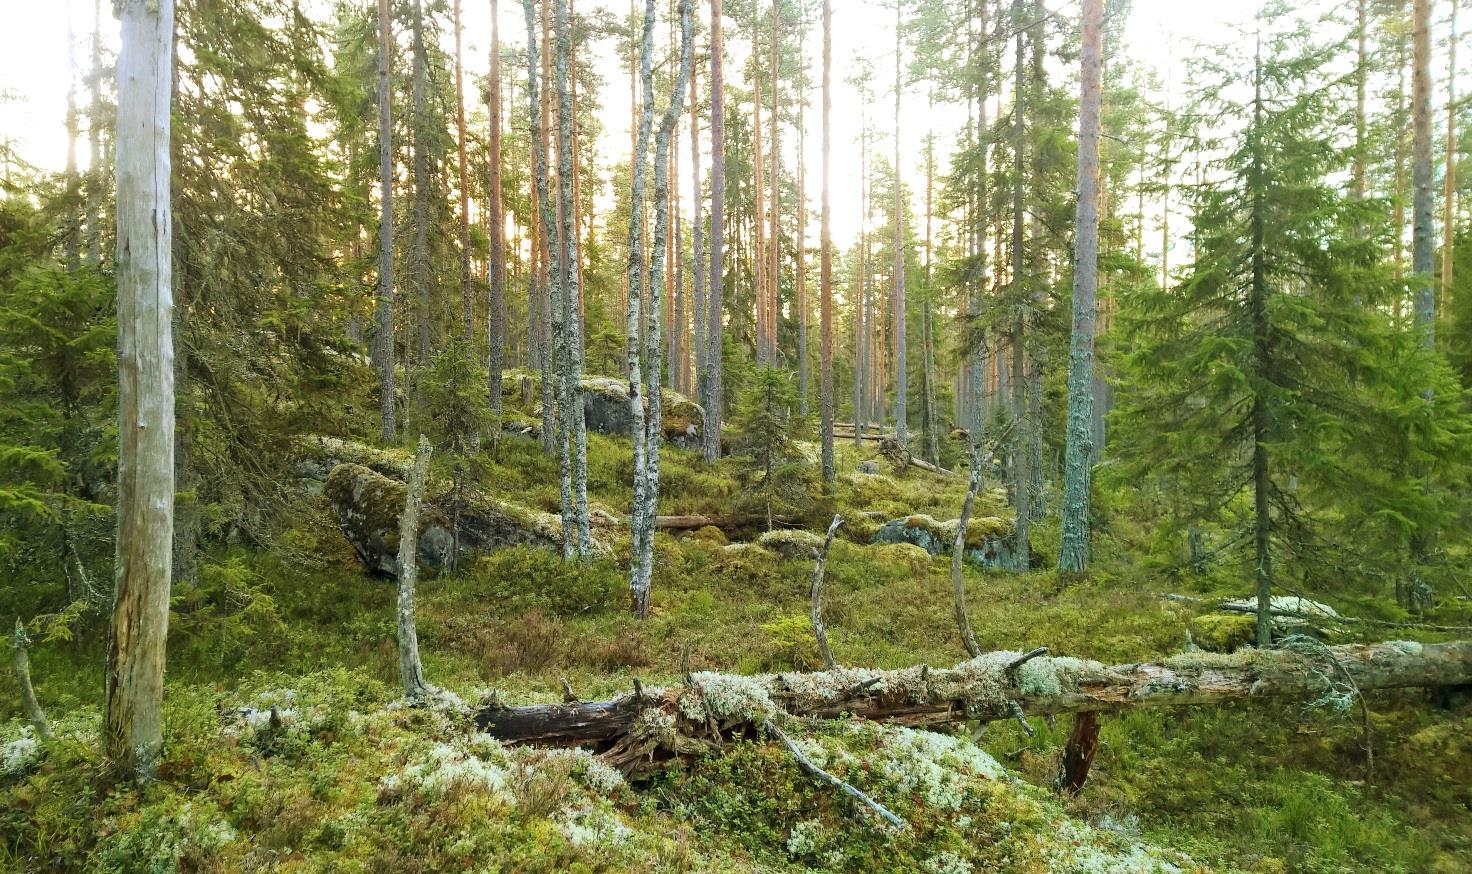 Johdanto Keurusseudun Luonnonystävät ry:n vapaaehtoiset kartoittajat, pääasiassa tämän raportin kirjoittajat, suorittivat syksyllä 2015 kääväkäsinventointeja Keurusseudun suojelemattomissa metsissä.